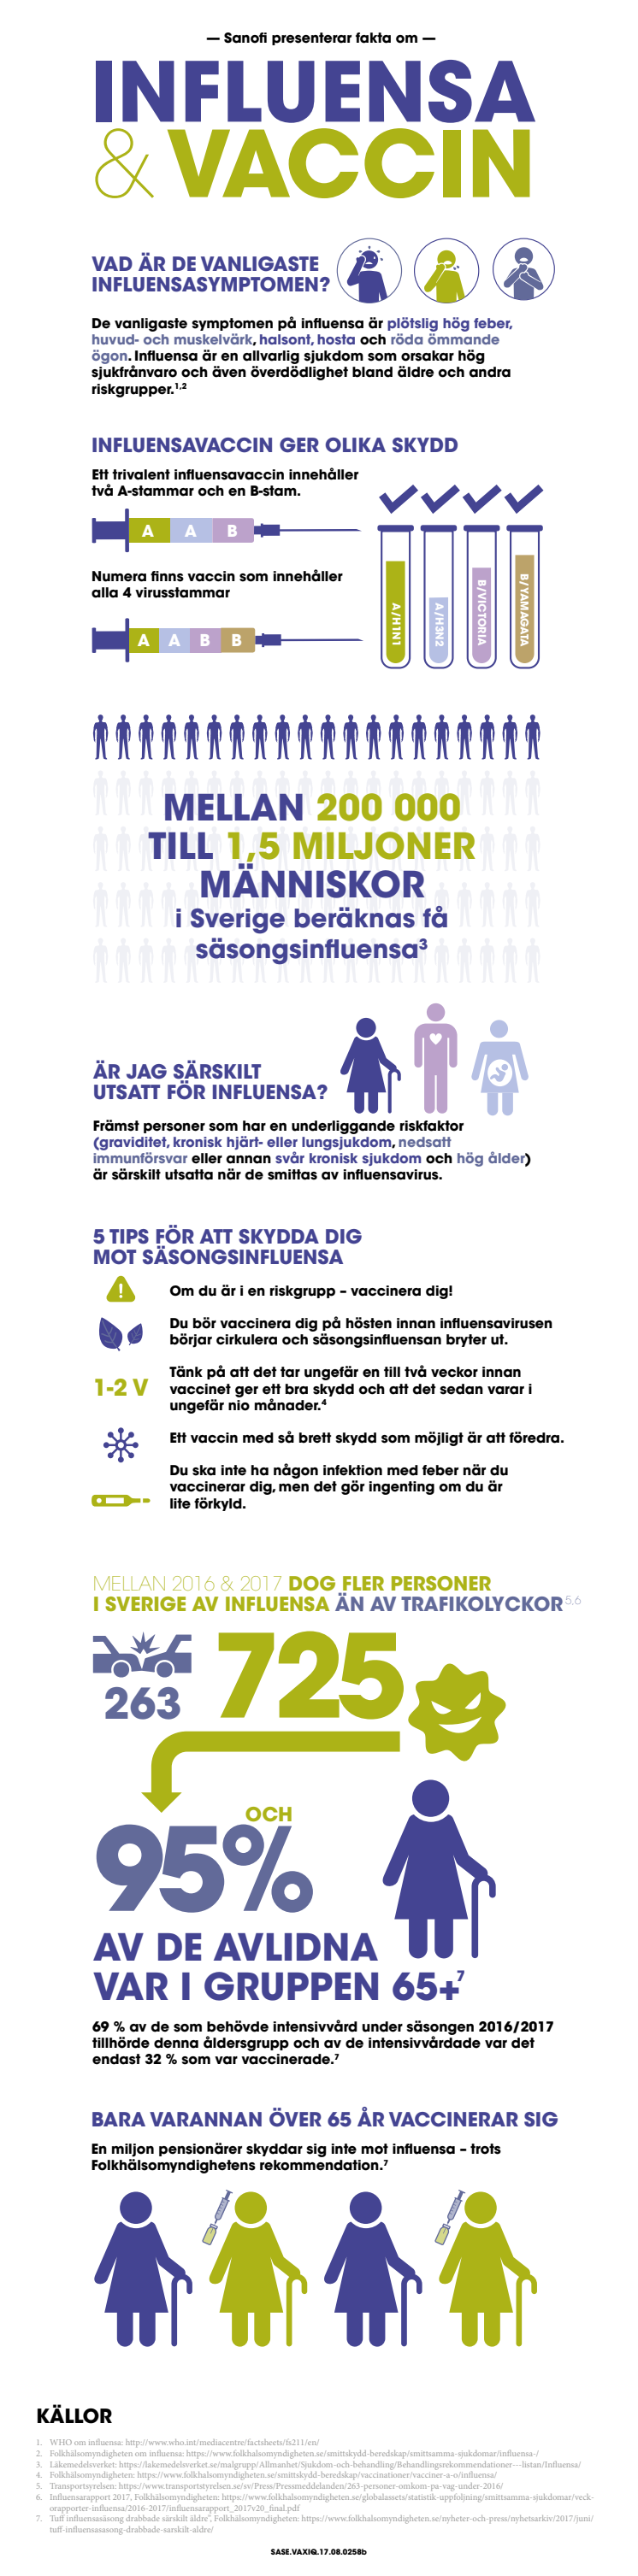 Infografik influensa och influensavaccin